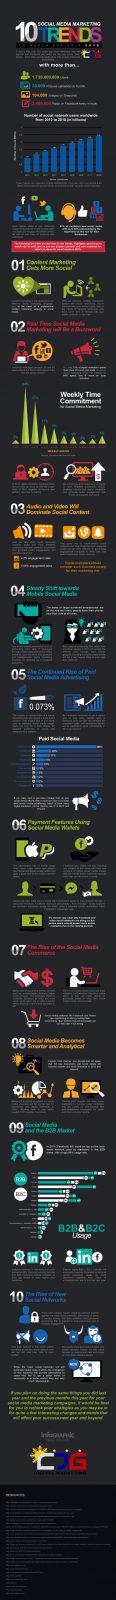 Aqui estão as tendências de mídias sociais que você precisa observar nesse ano.